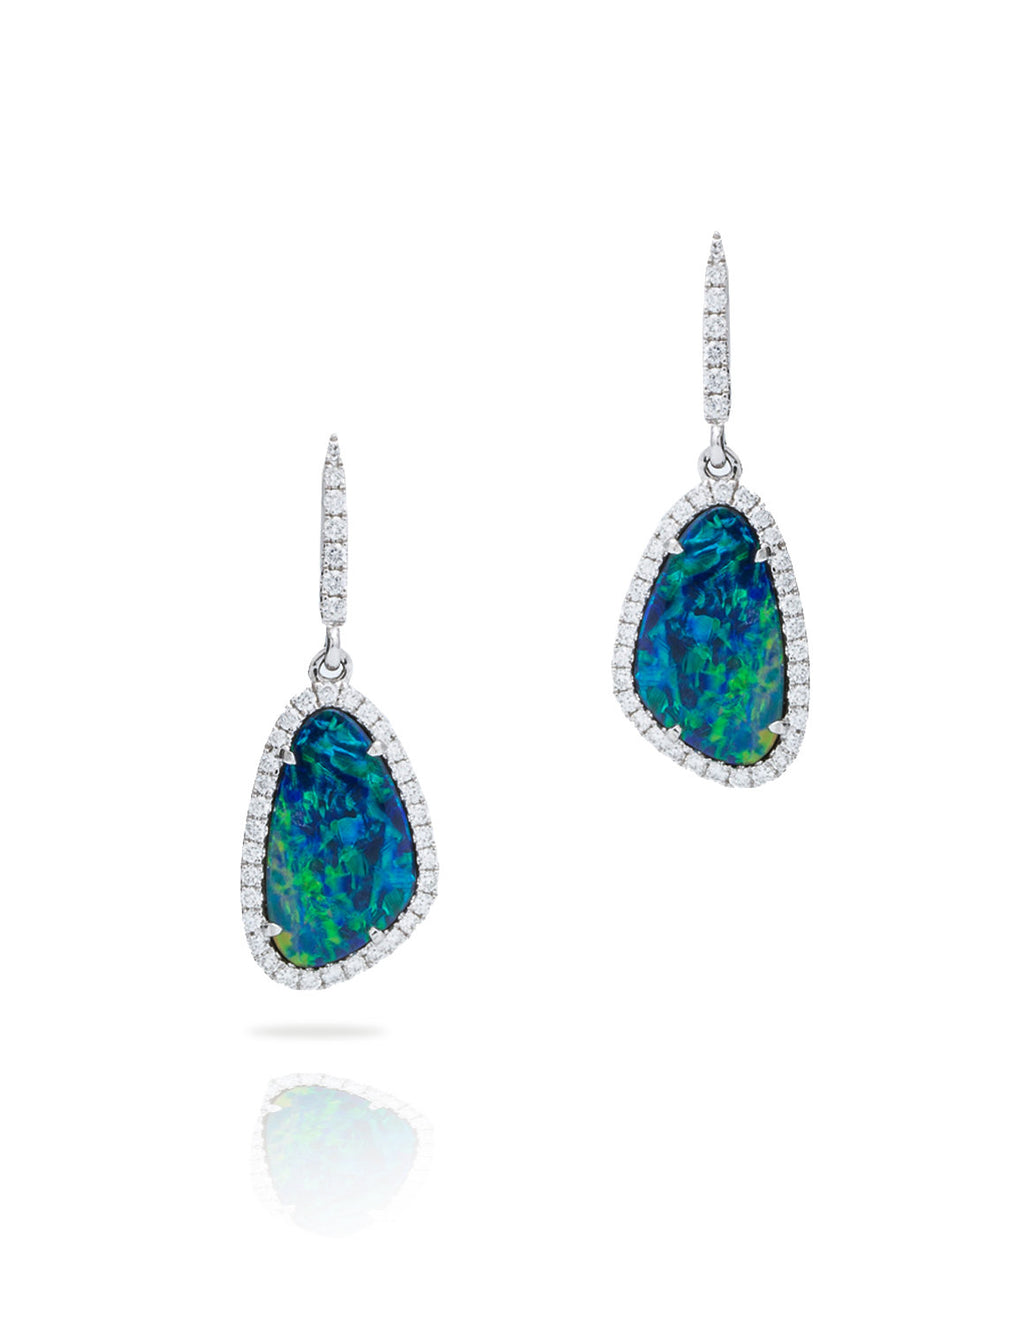 Opal Doublet Halo Drop Earrings - Charles Koll Jewellers